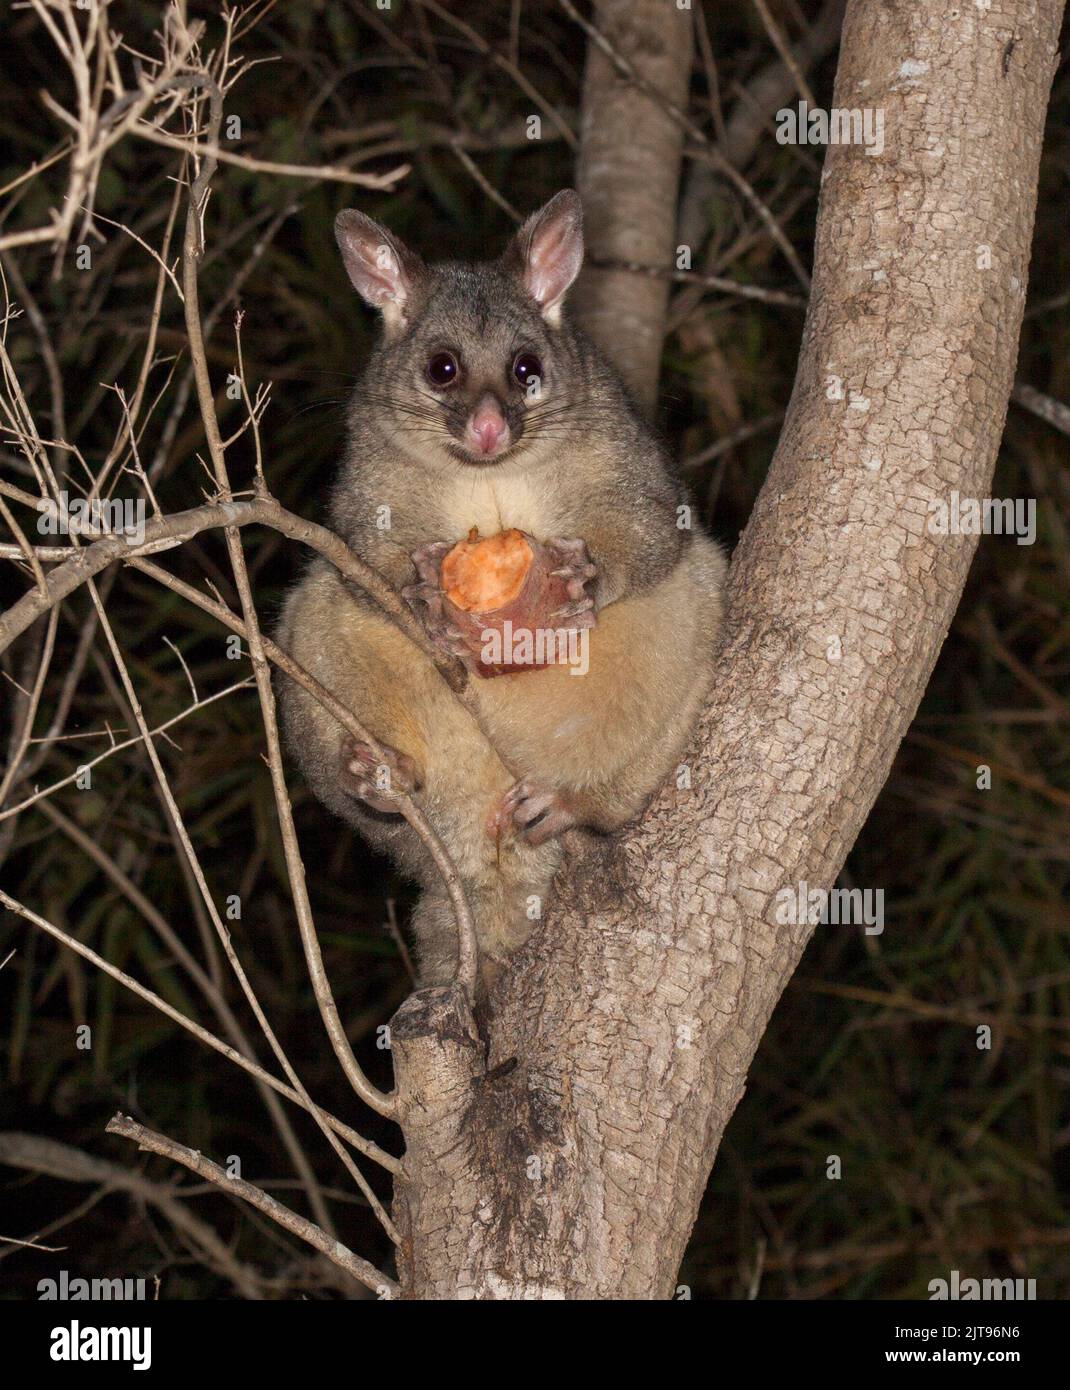 Bella femmina Brush-tail Possum, con un pezzo di patata dolce sulle sue zampe, con espressione di allarme e guardando la macchina fotografica, in giardino albero in Australia Foto Stock